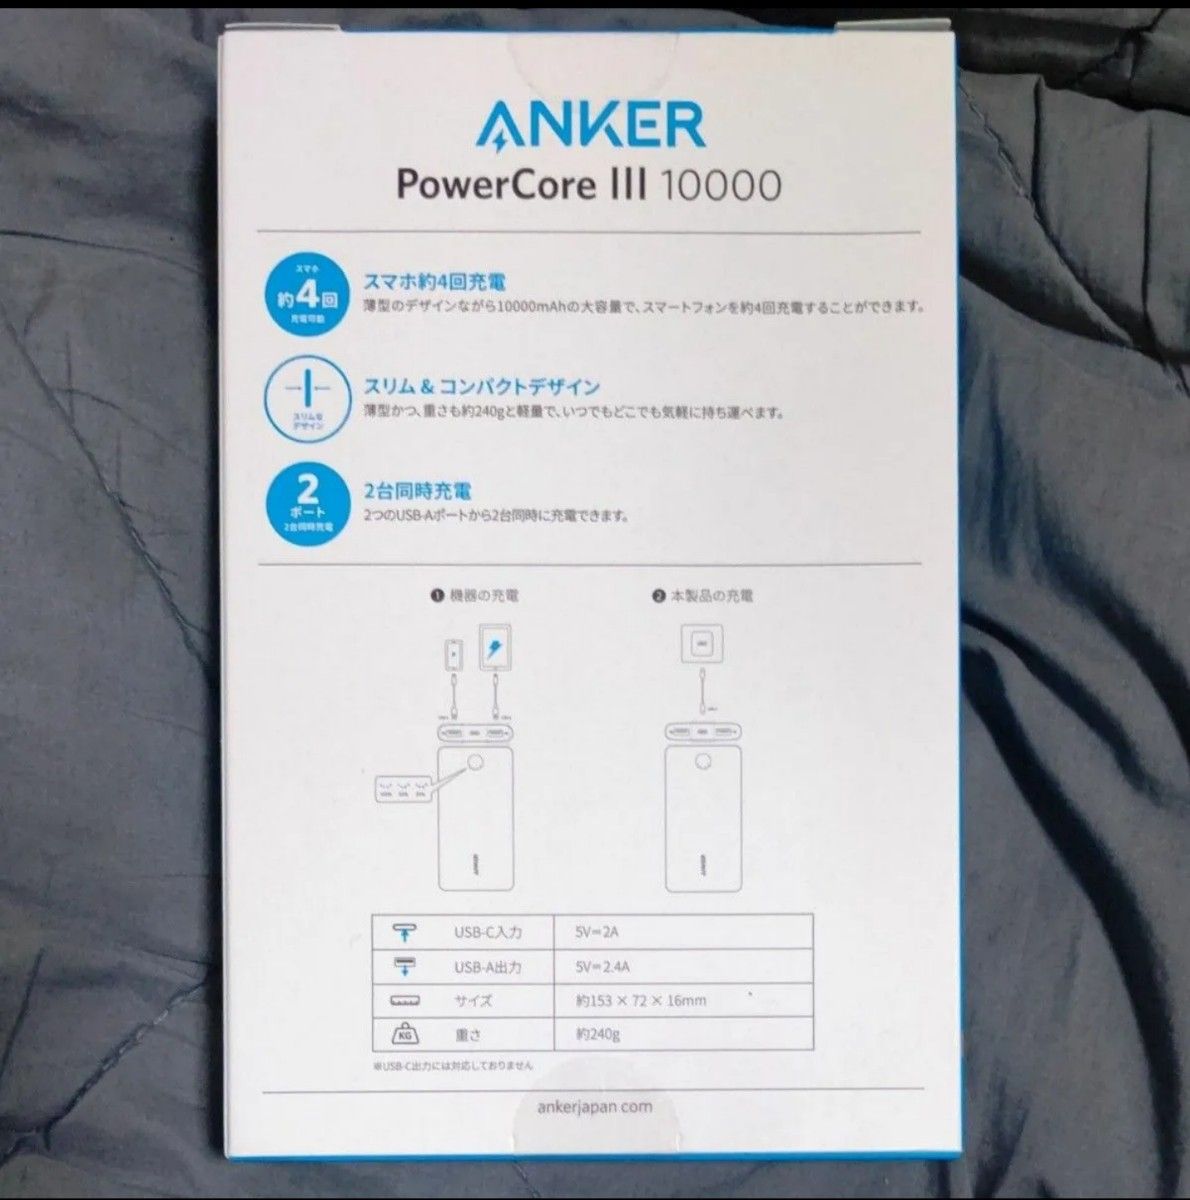 モバイルバッテリー 大容量 10000mAh ポケットチャージャー PowerCore III ANKER 新品 未使用 未開封